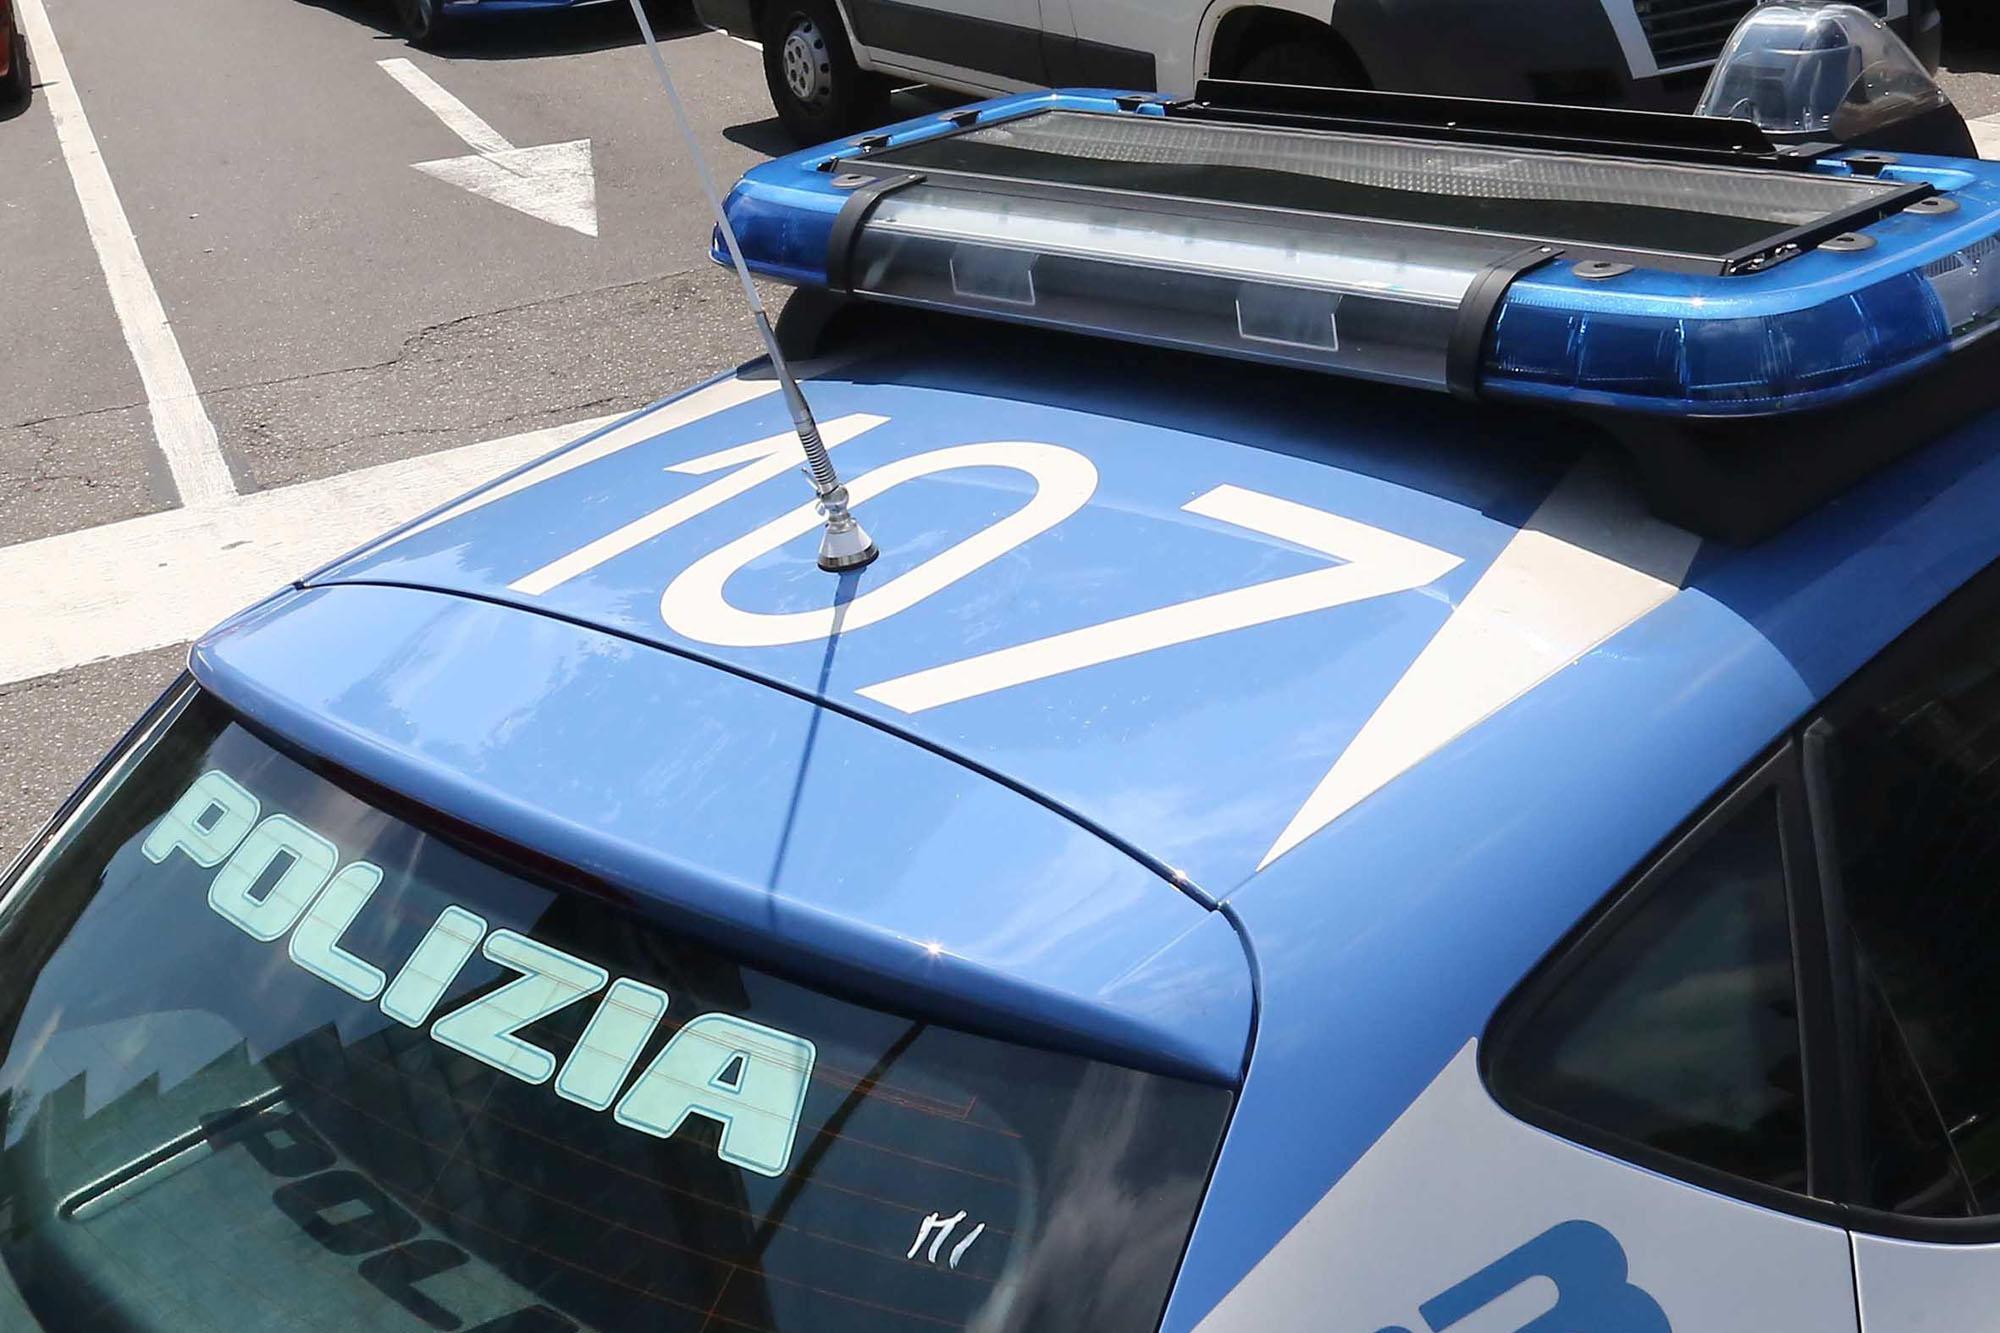 Droga e prostituzione, sgominata banda a Milano: 14 arresti - Adnkronos